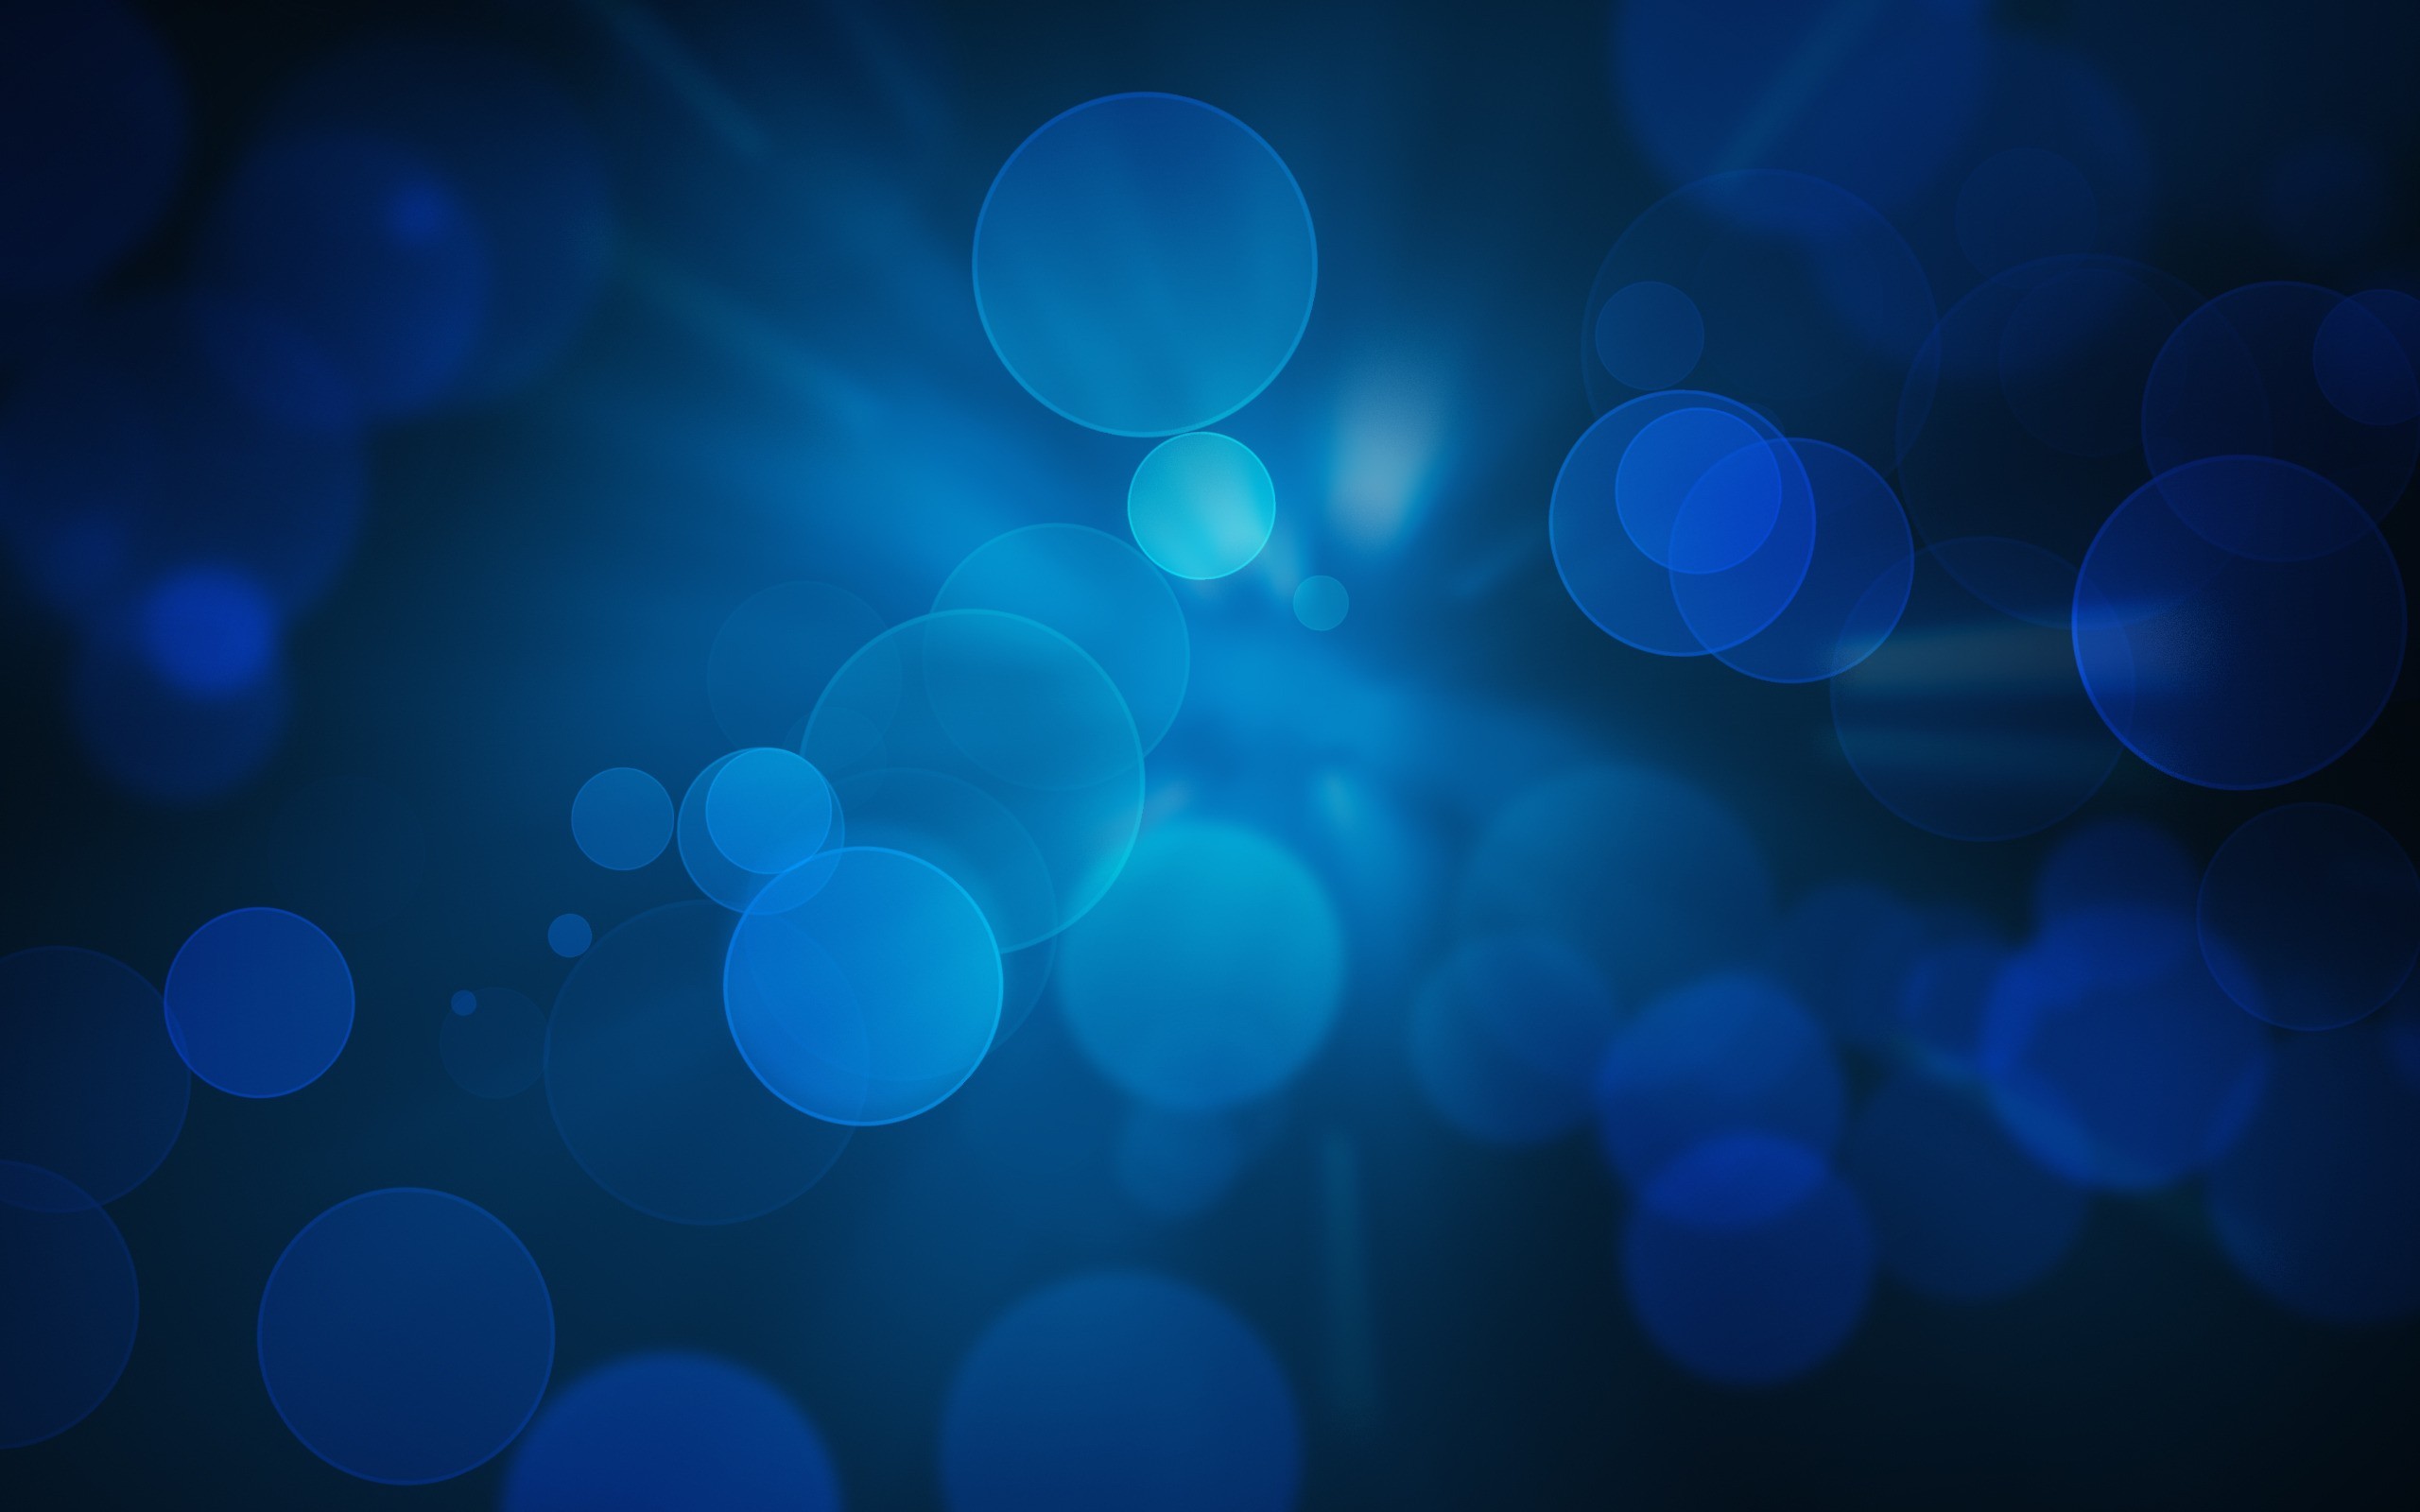 Hình nền fractals ánh sáng màu xanh dương nhảy múa, Hình nền màu xanh dương... Fractals và ánh sáng là hai yếu tố tuyệt vời để tạo nên một bức hình nền đẹp mắt. Chỉ cần nhấn chuột vào hình nền này, bạn sẽ được trải nghiệm những đường nét màu xanh dương nhảy múa, tạo nên một không gian đầy sáng tạo và phong cách. Chọn hình nền fractals ánh sáng màu xanh dương này để thêm sự mới mẻ vào chiếc máy tính của bạn.